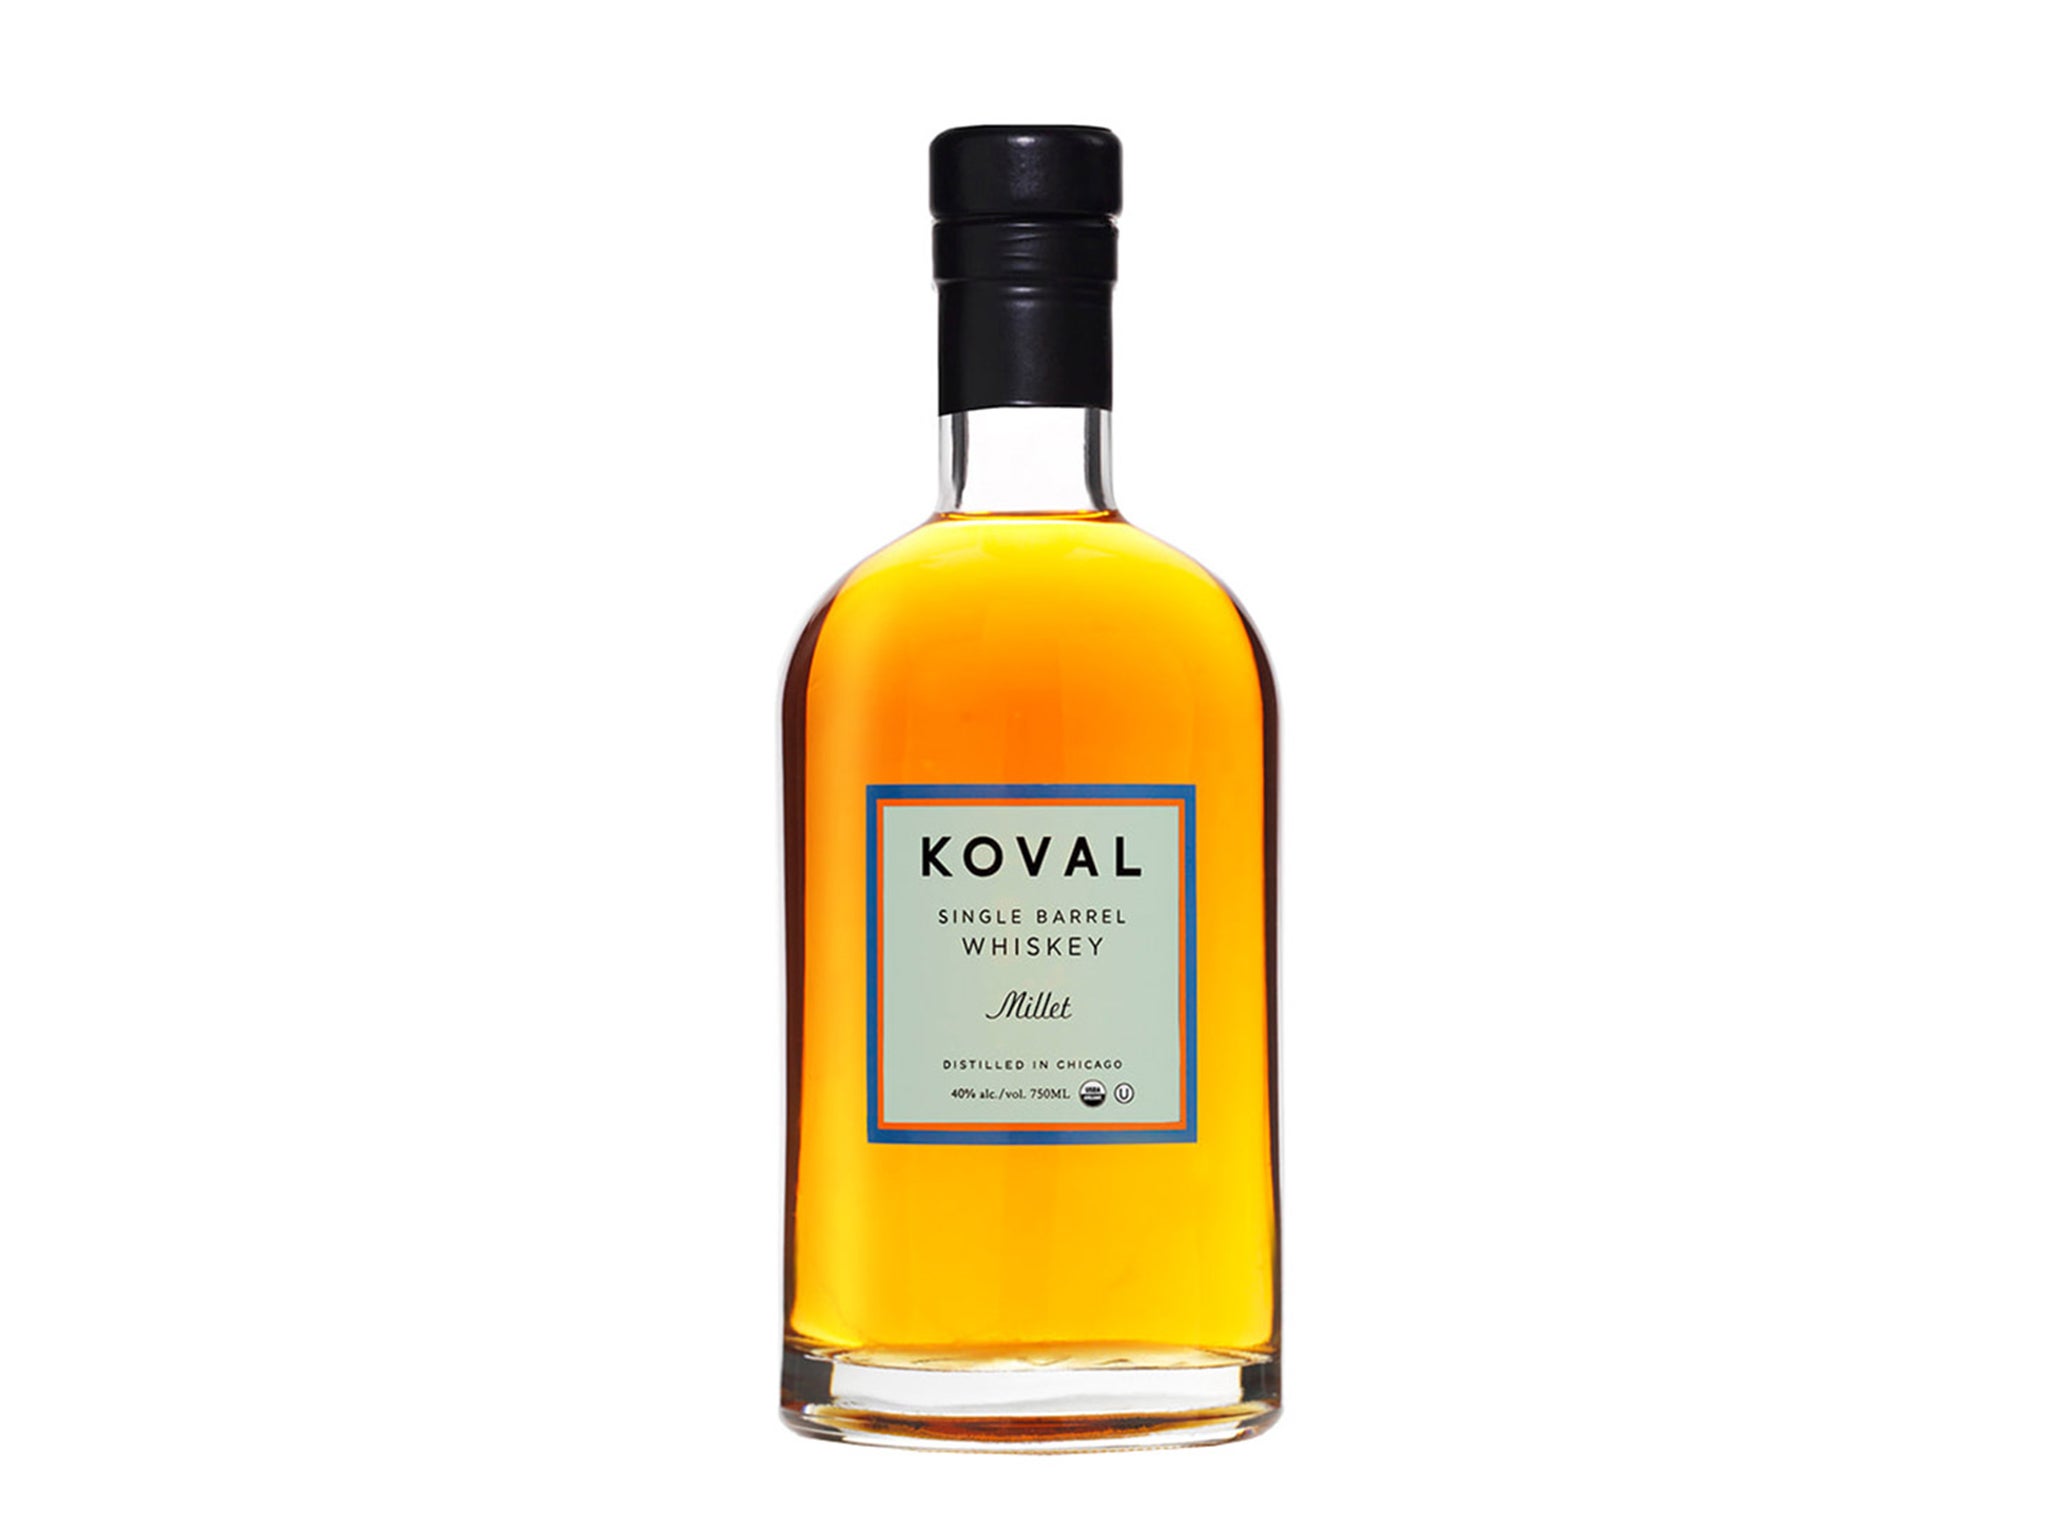 Koval-Millet-indybest-american-whiskey.jpg